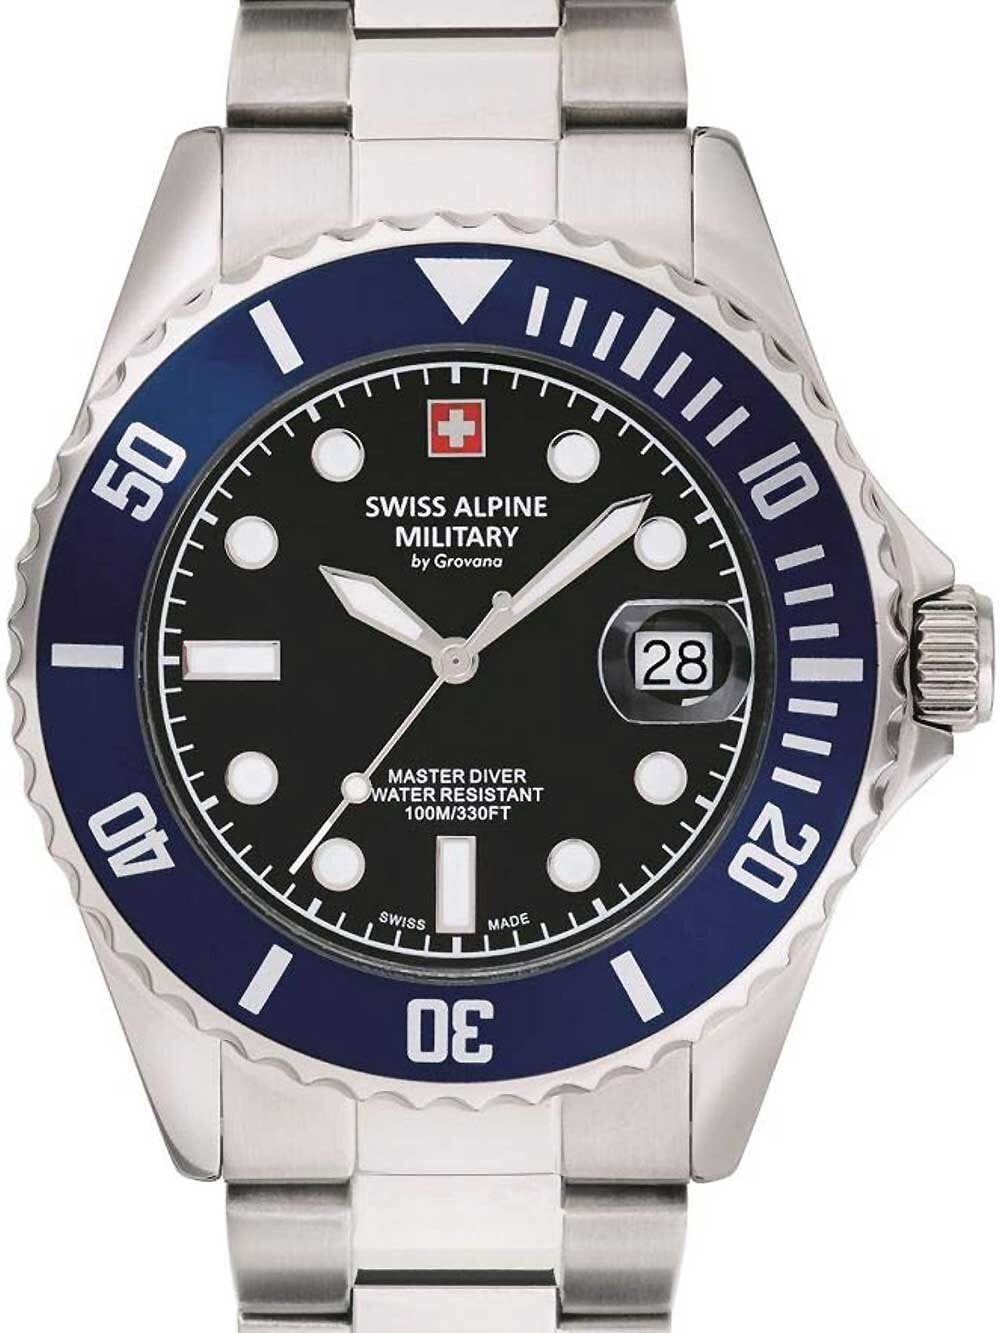 Мужские наручные часы с серебряным браслетом Swiss Alpine Military 7053.1136 diver 42mm 10ATM